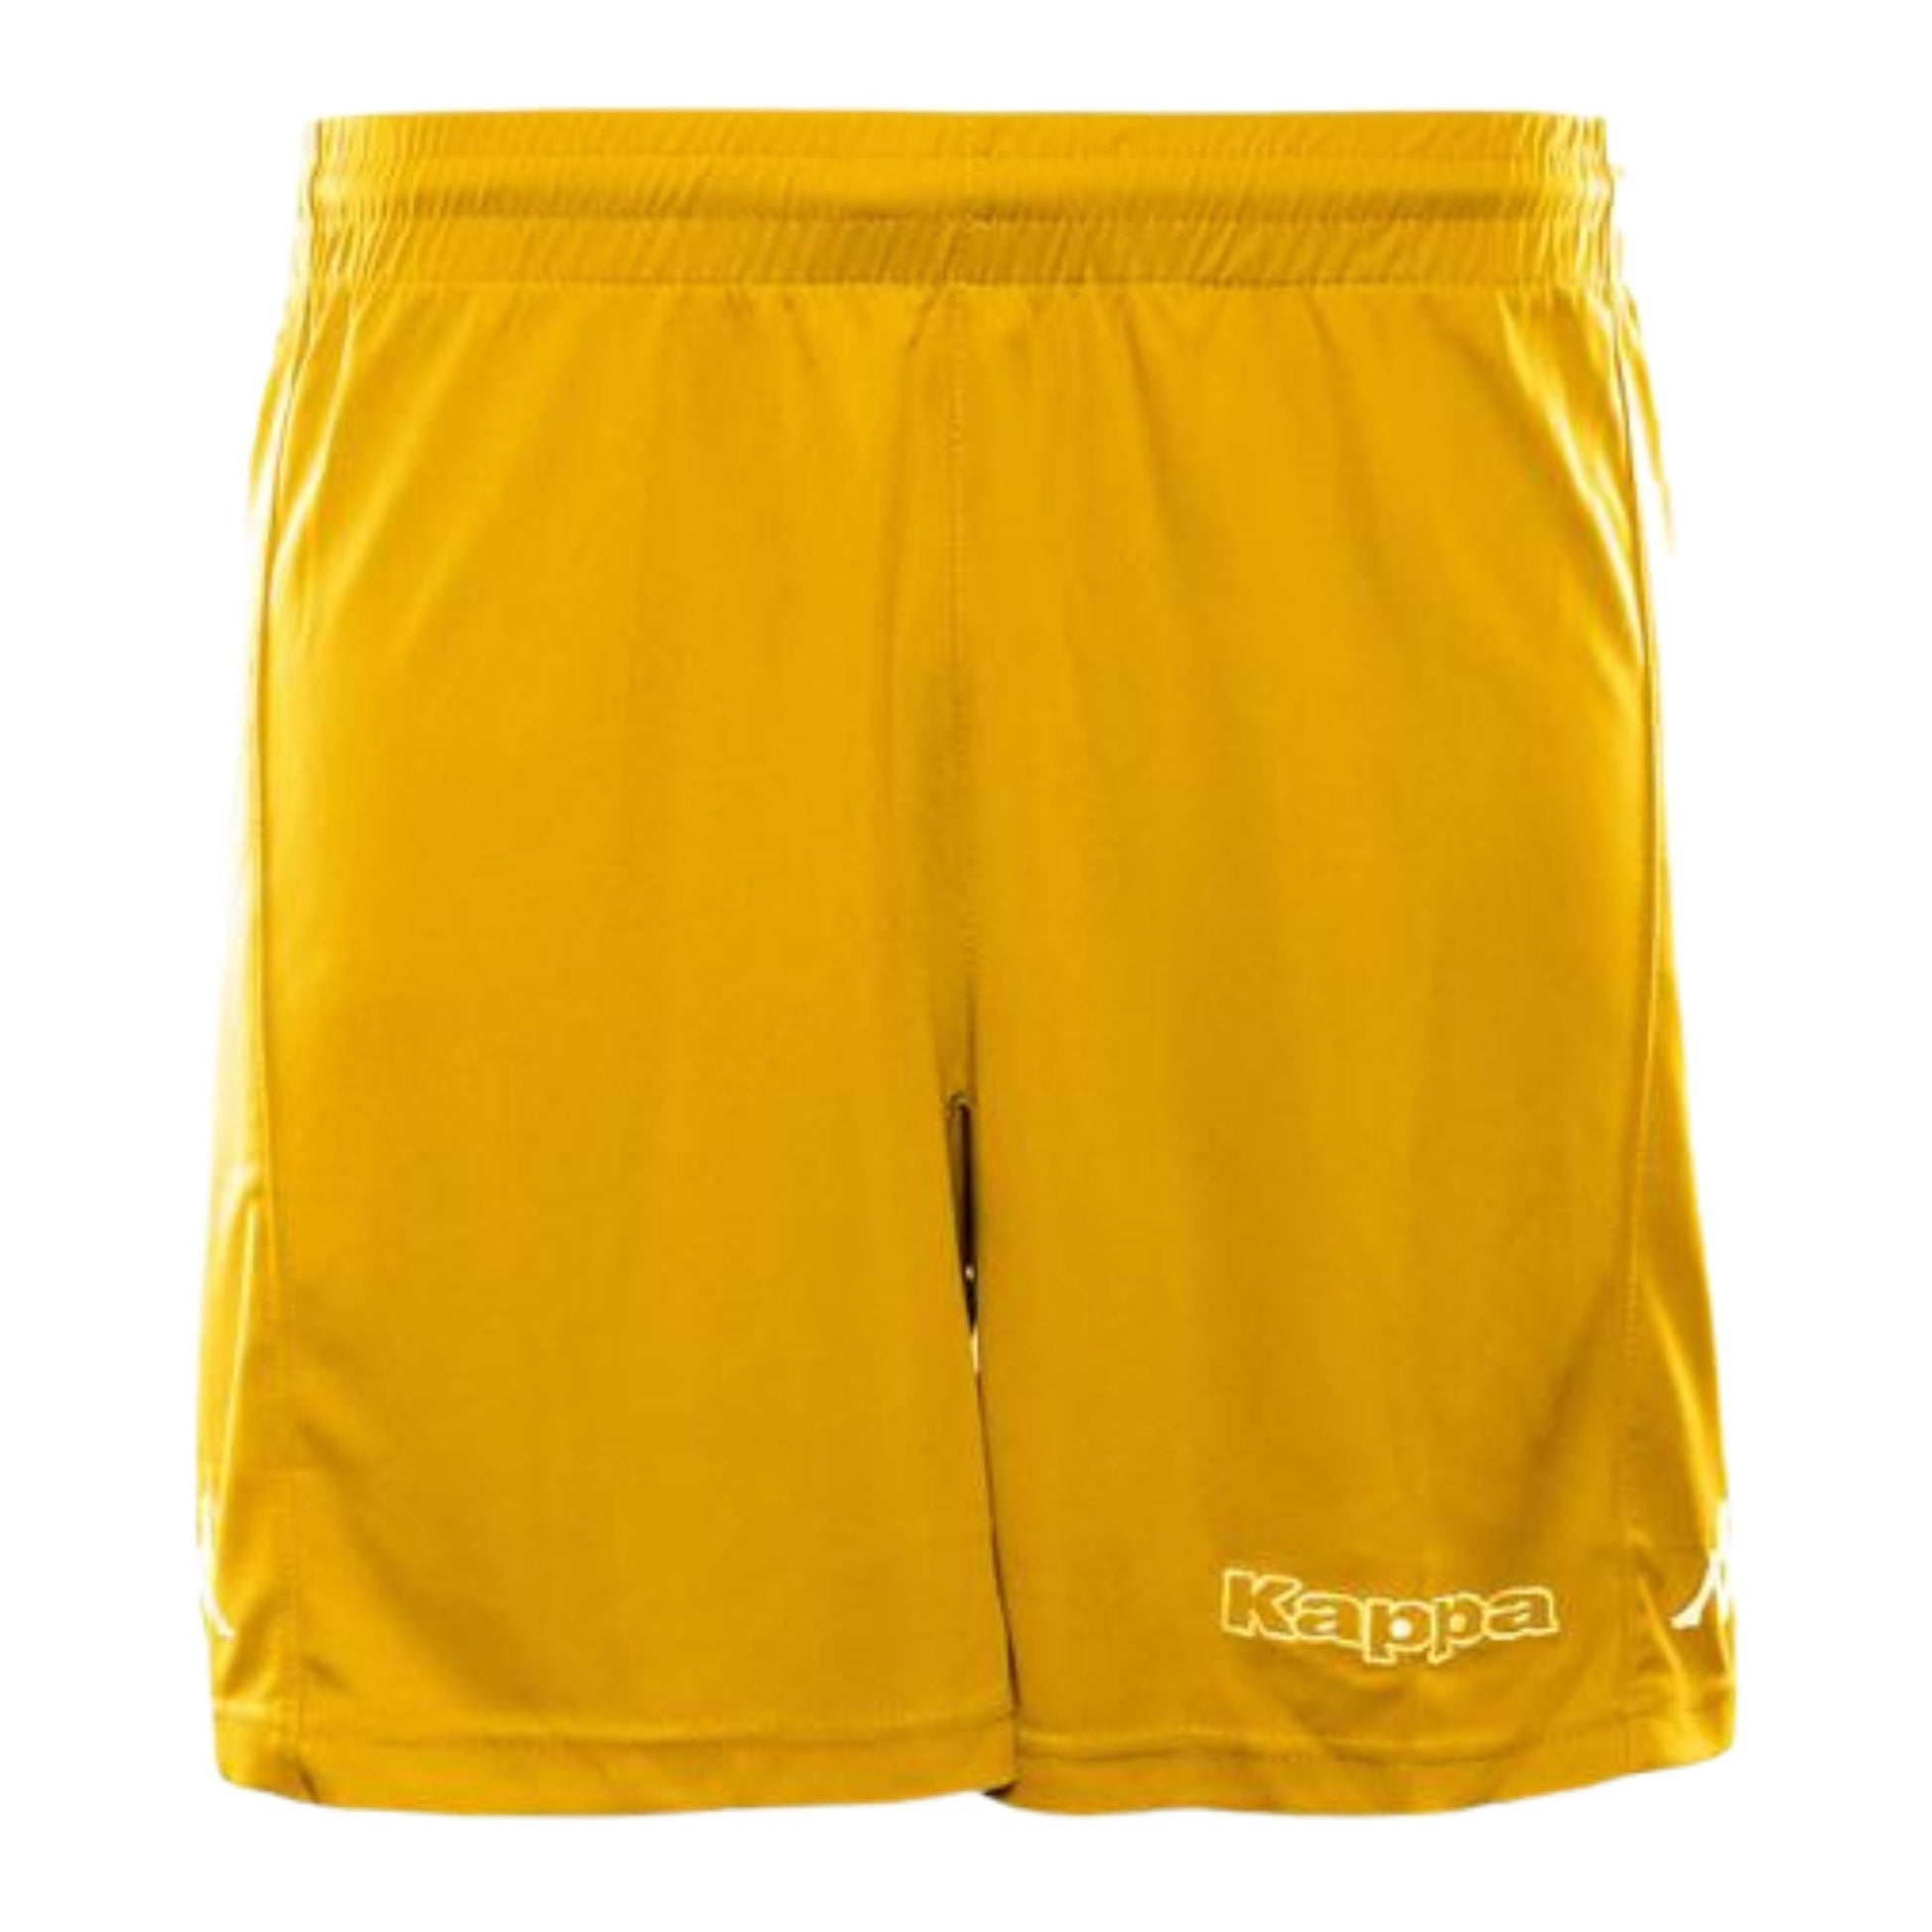 Kappa Unisex Shorts Shorts KAPPA XS YELLOW 